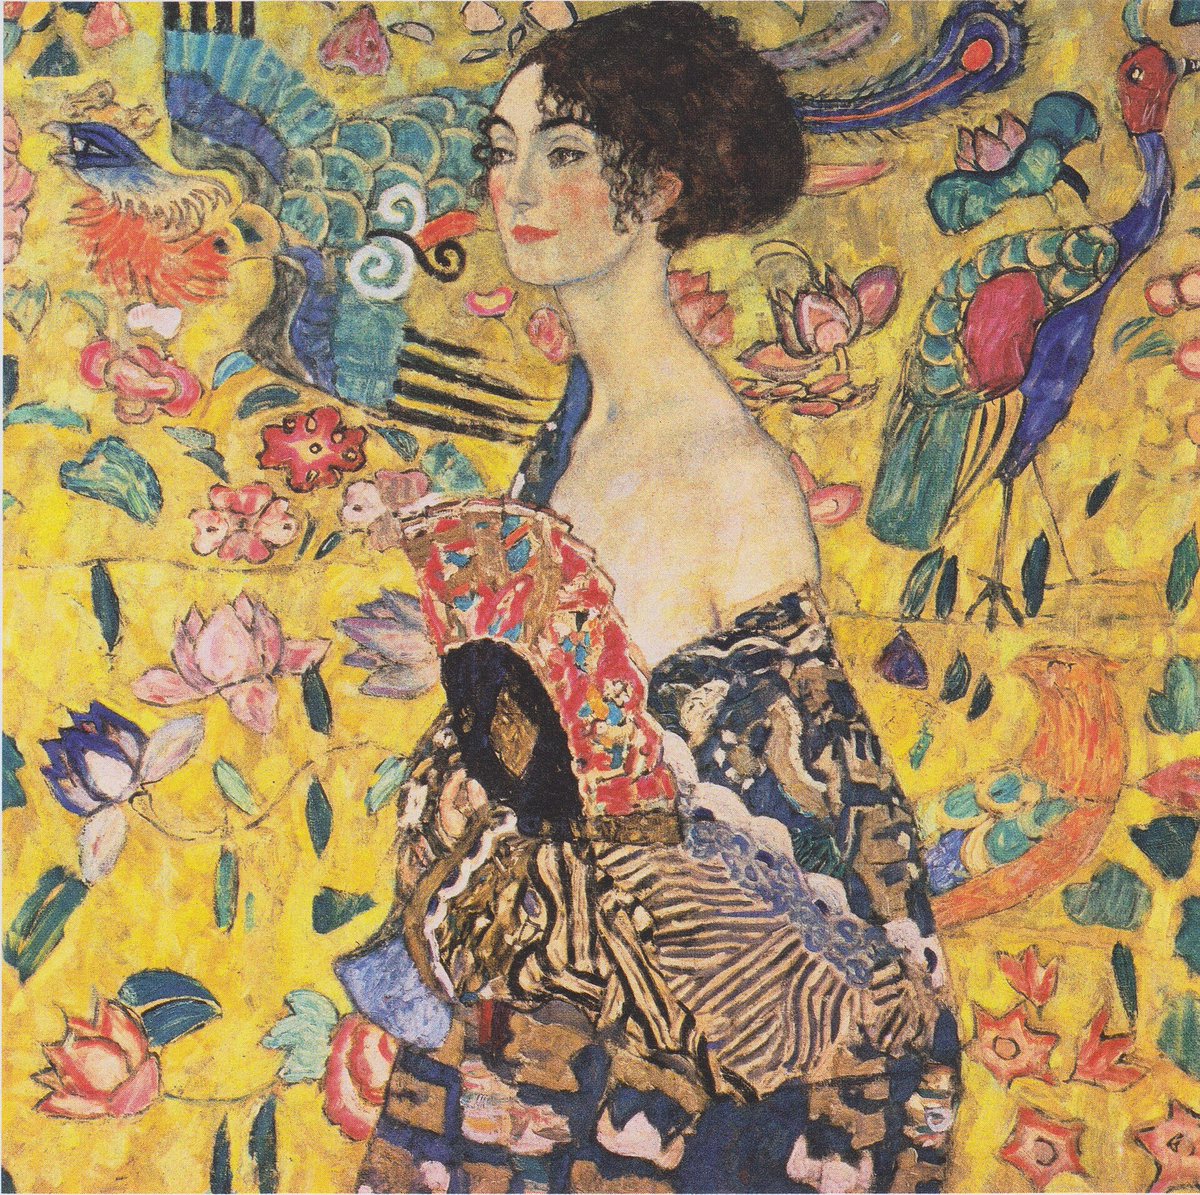 La femme à l'éventail est une huile sur toile peinte par Gustav Klimt (1862-1918) à la fin de sa carrière, vers 1917. Vendue aux enchères en 2023 pour près de 86 millions d'euros, elle est aujourd'hui l'oeuvre la plus chère de l'artiste.